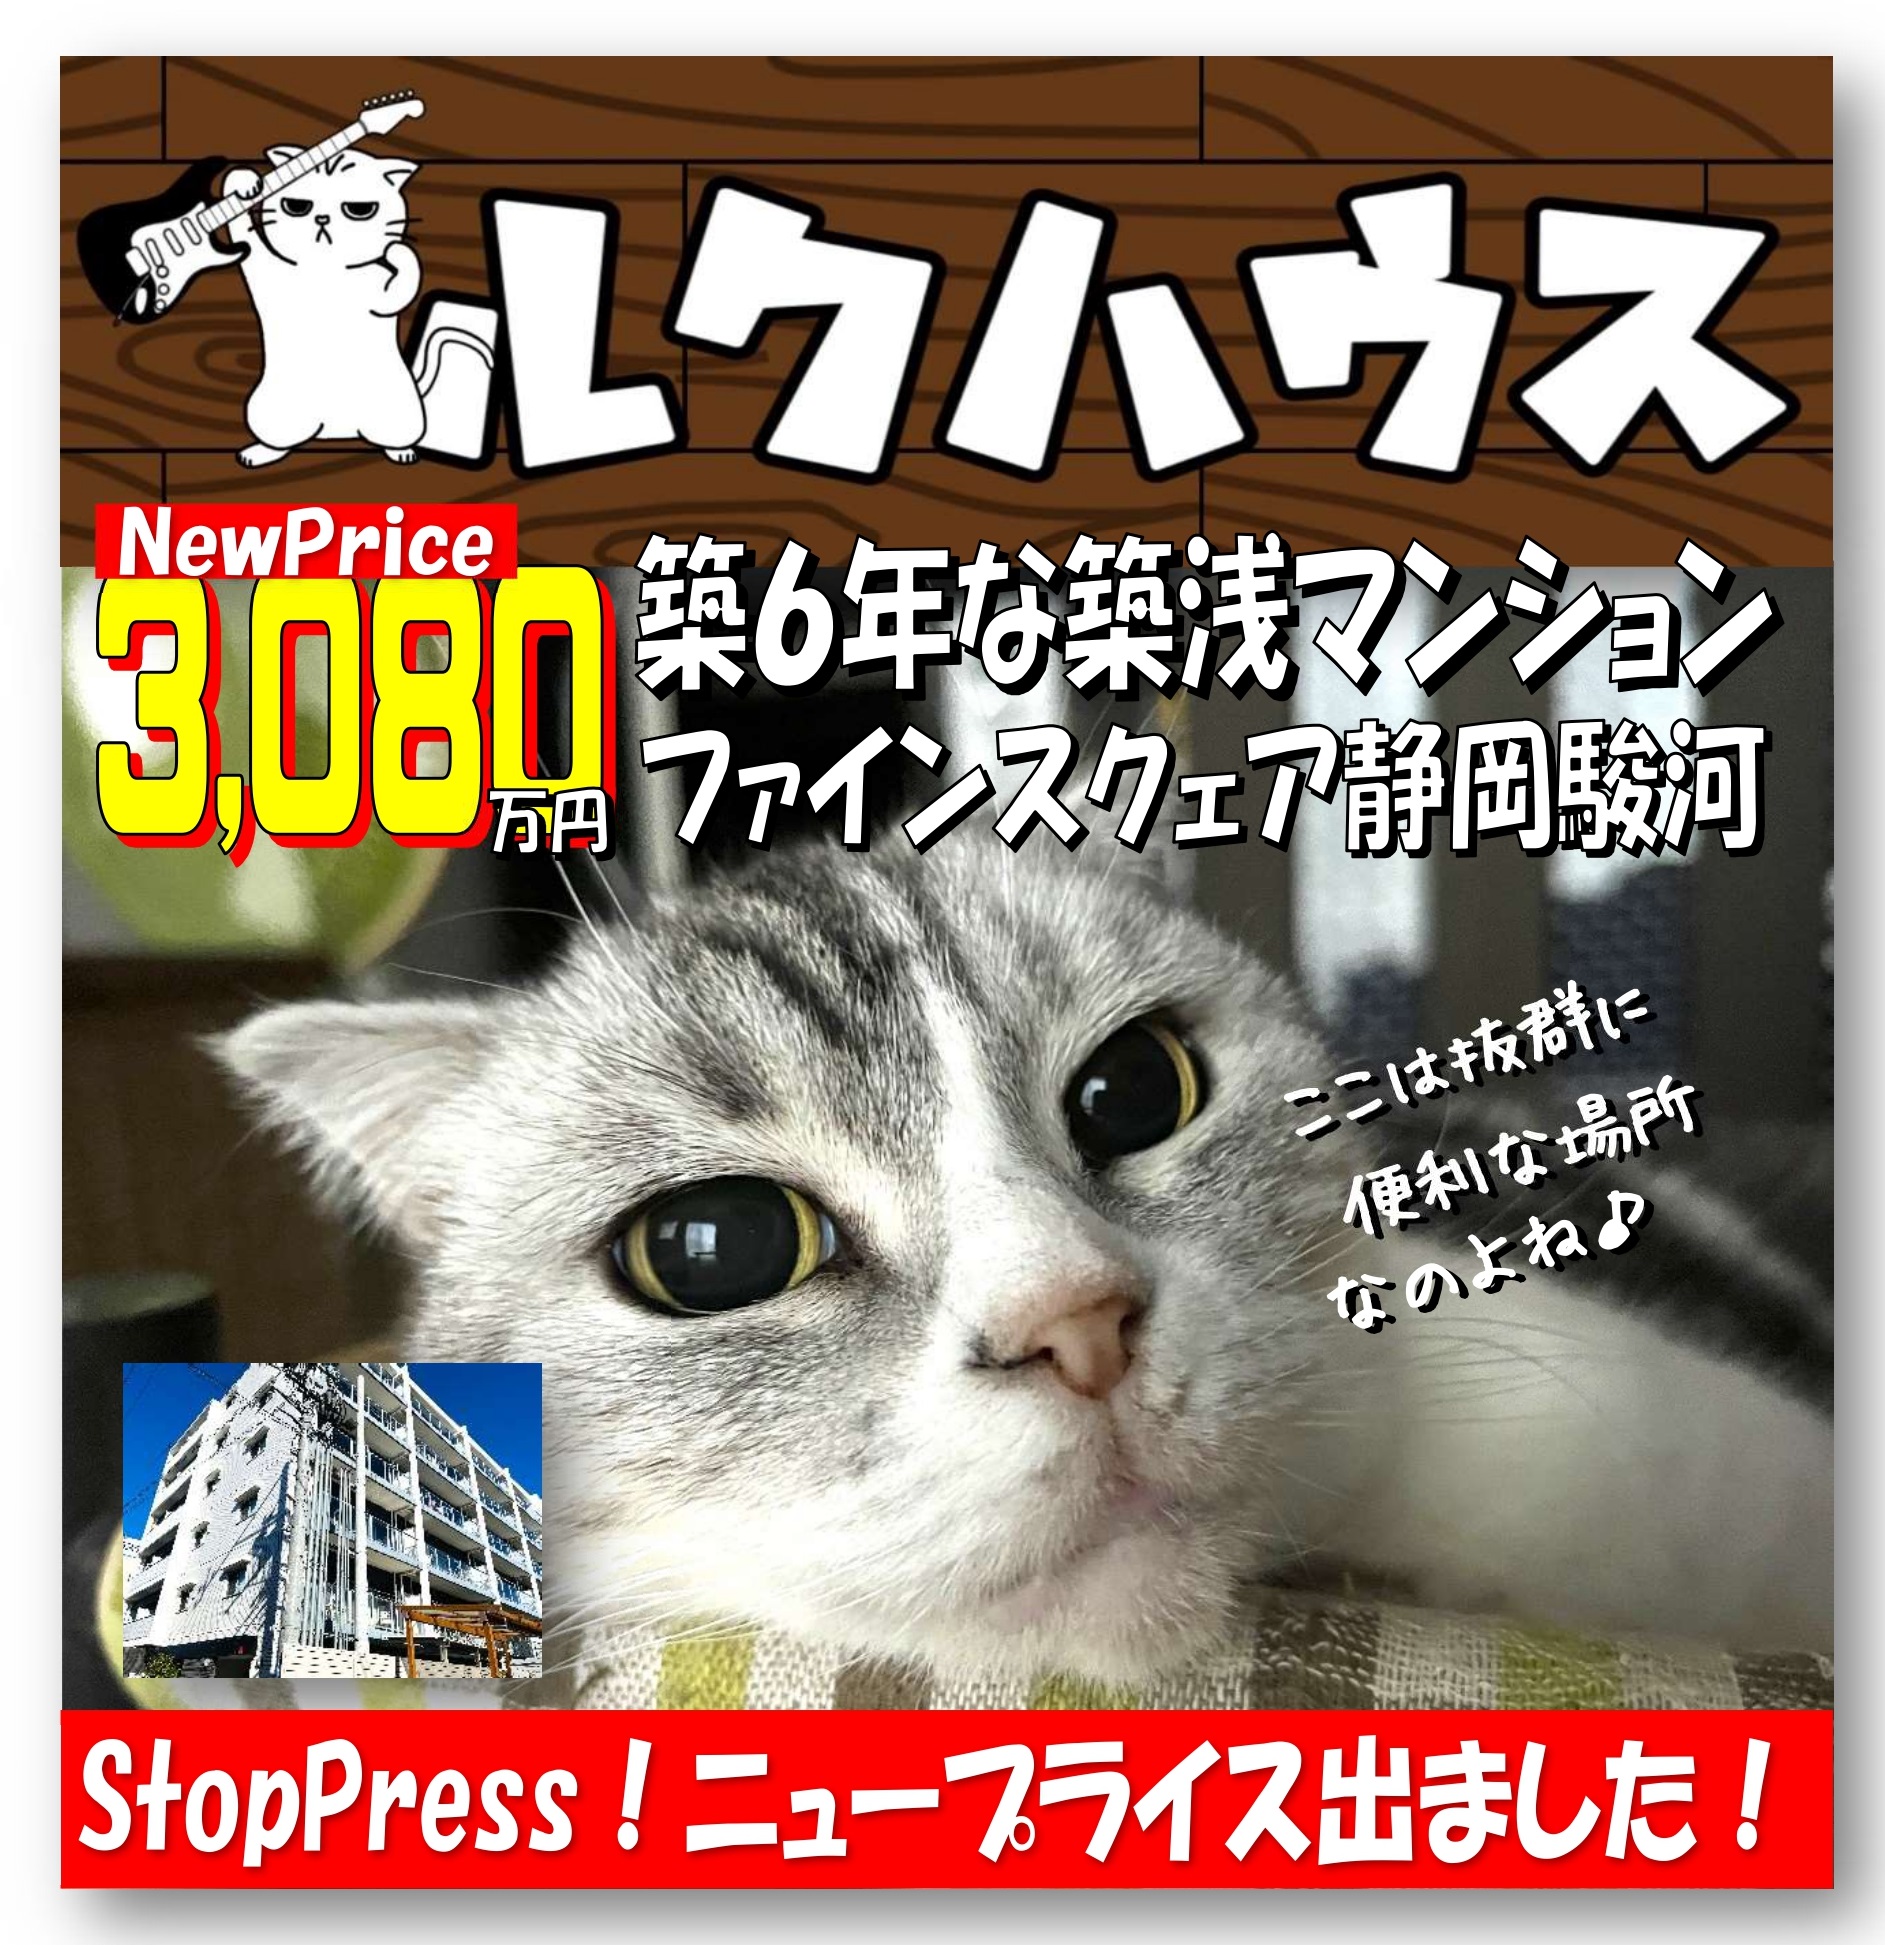 ■StopPress！ニュープライスは3080万円■　駿河区中吉田・ファインスクェア静岡駿河